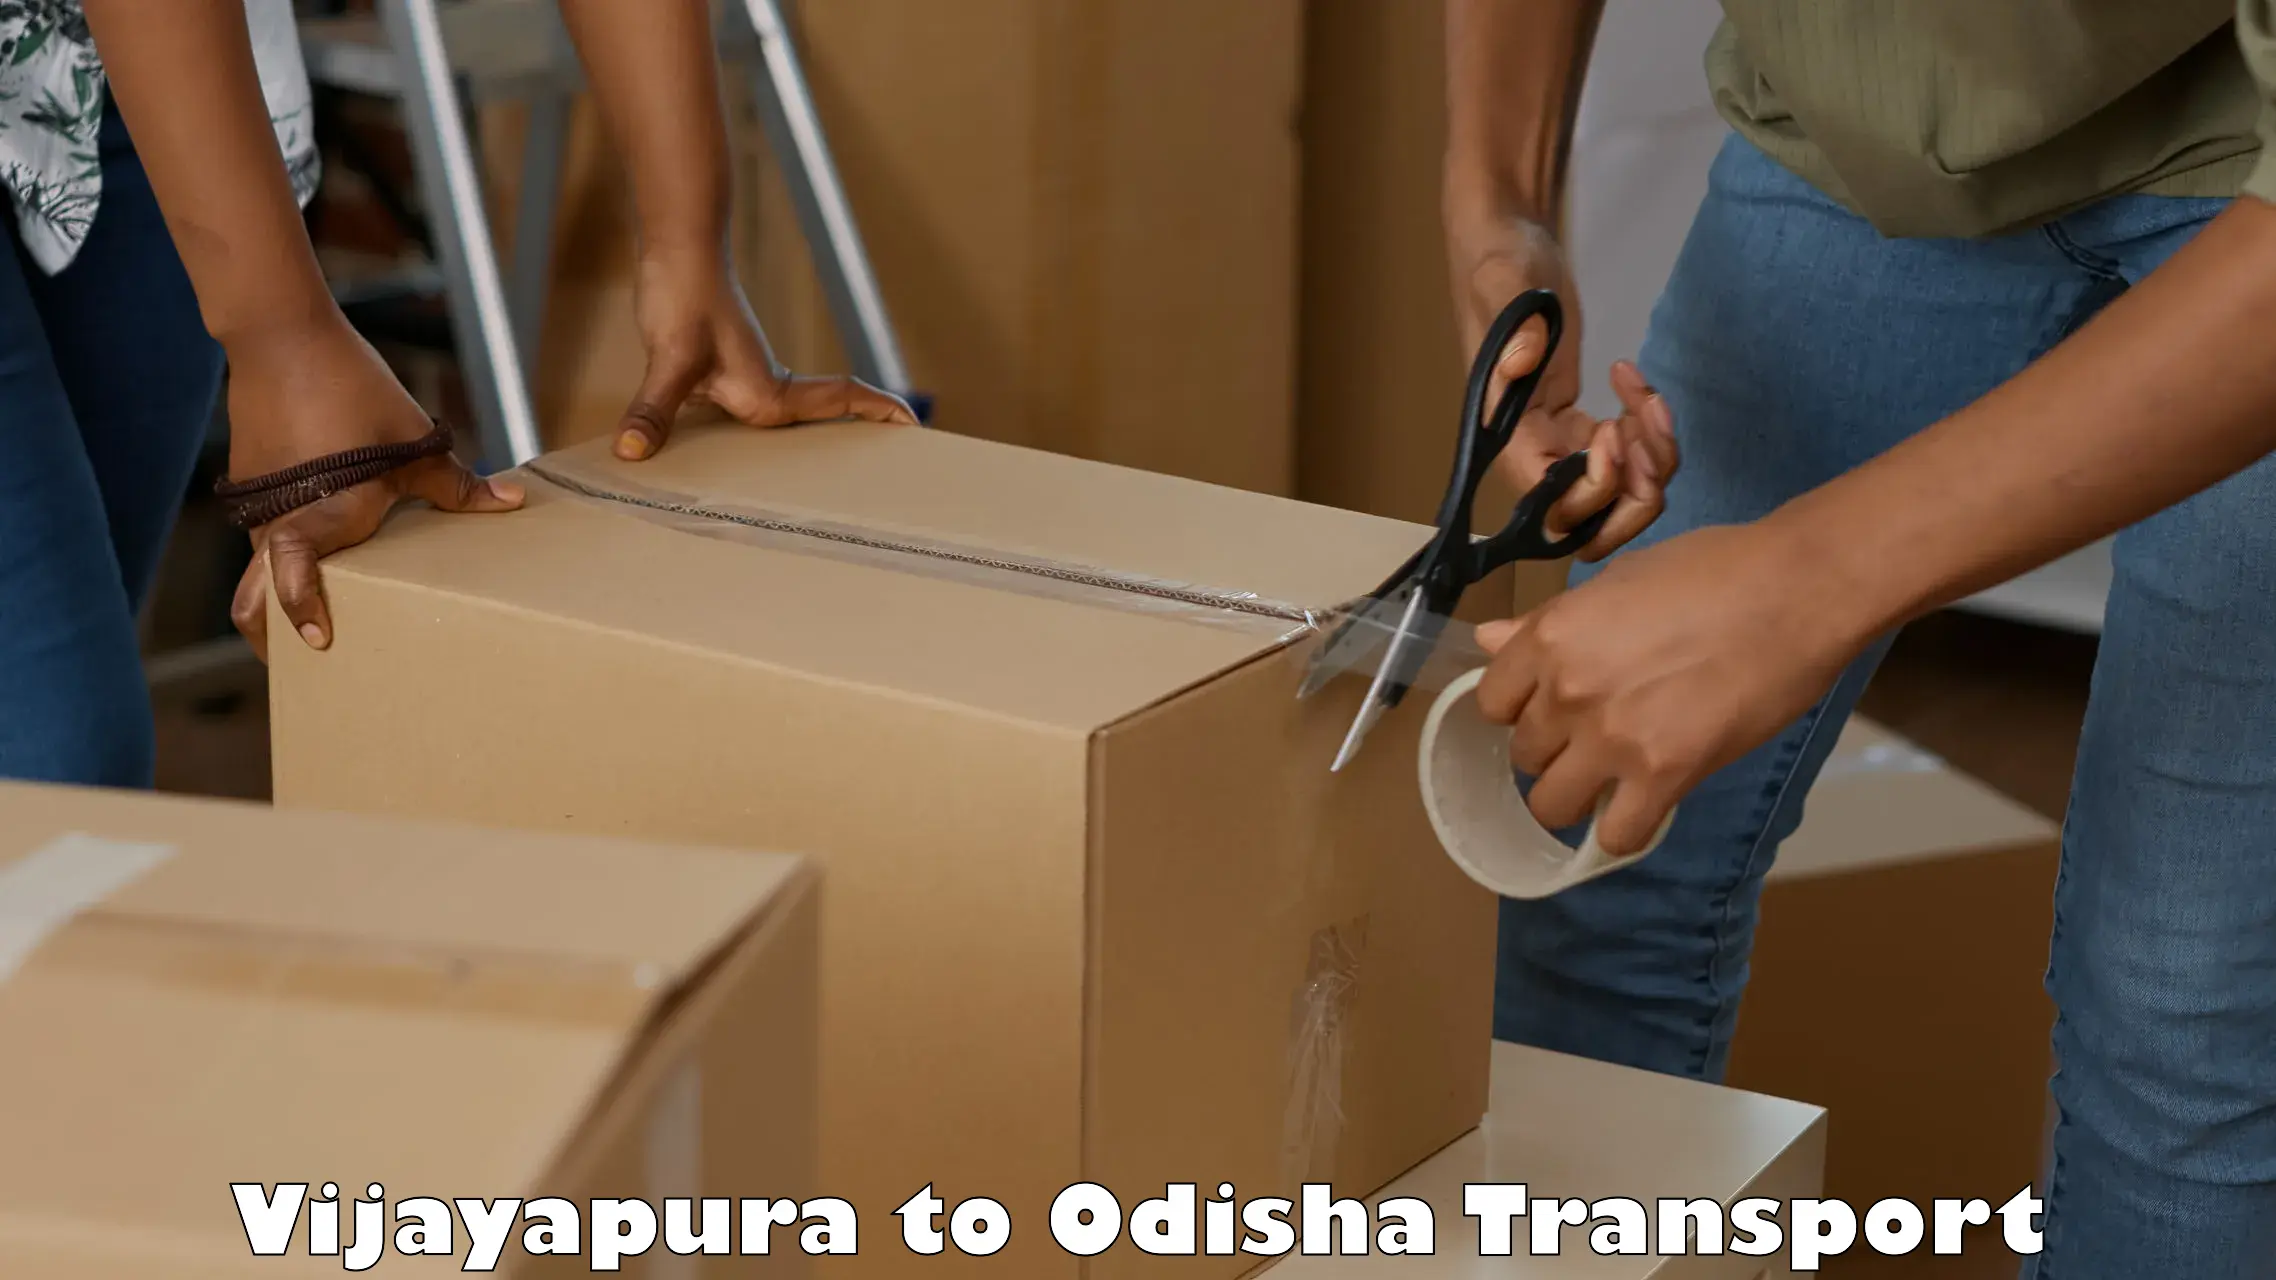 Bike transport service Vijayapura to Odisha